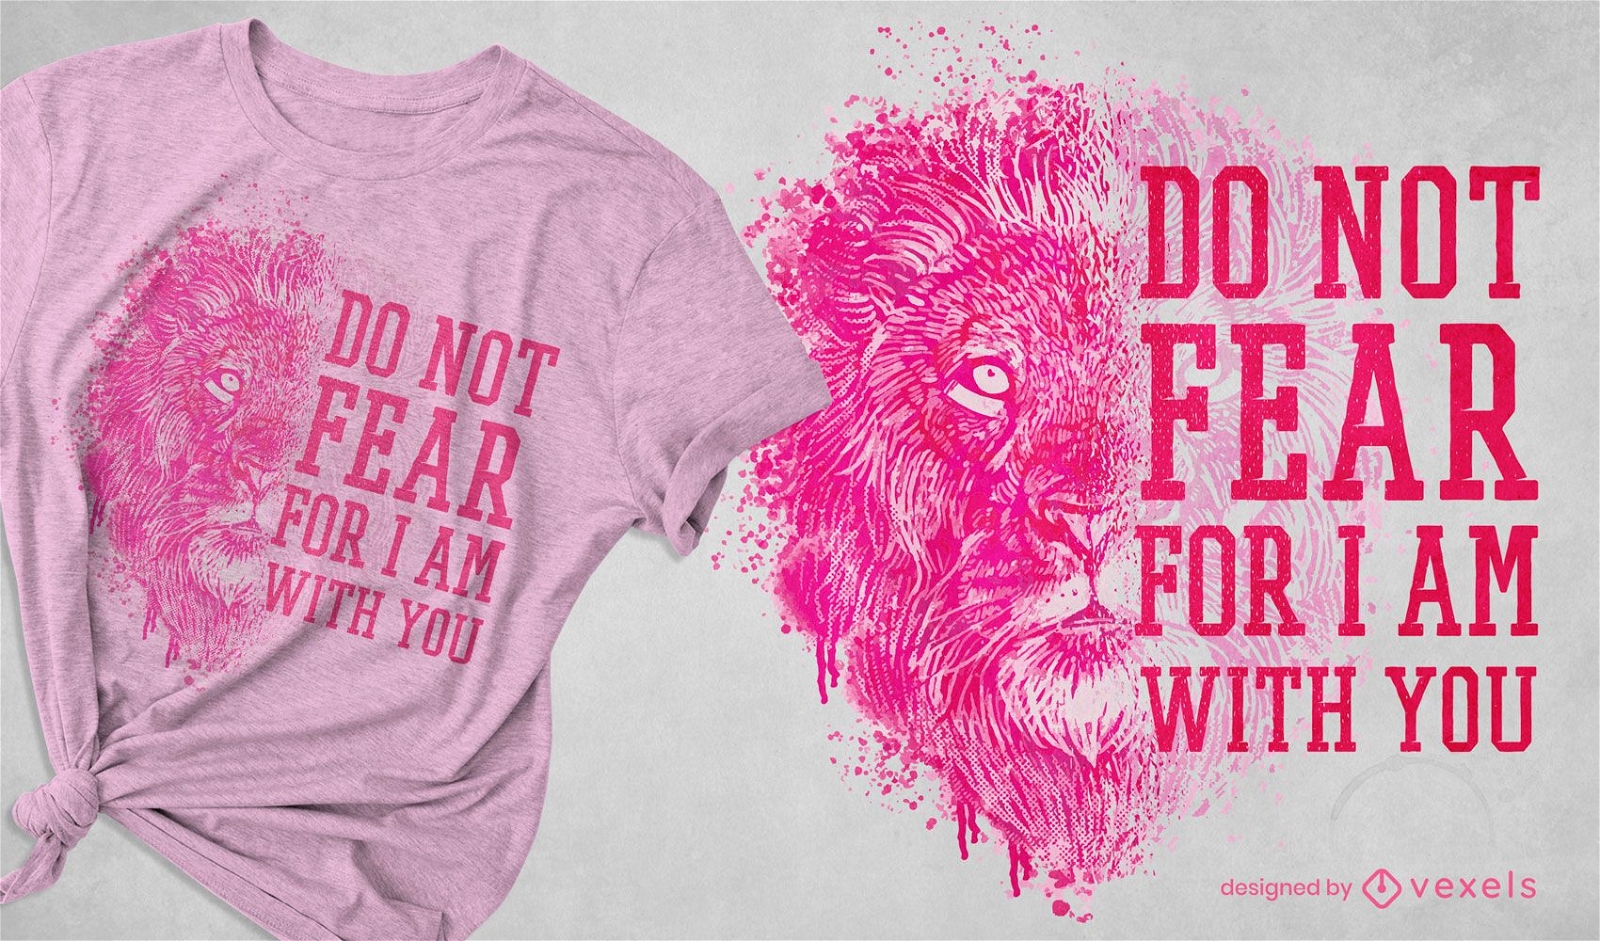 Diseño de camiseta realista león salvaje.